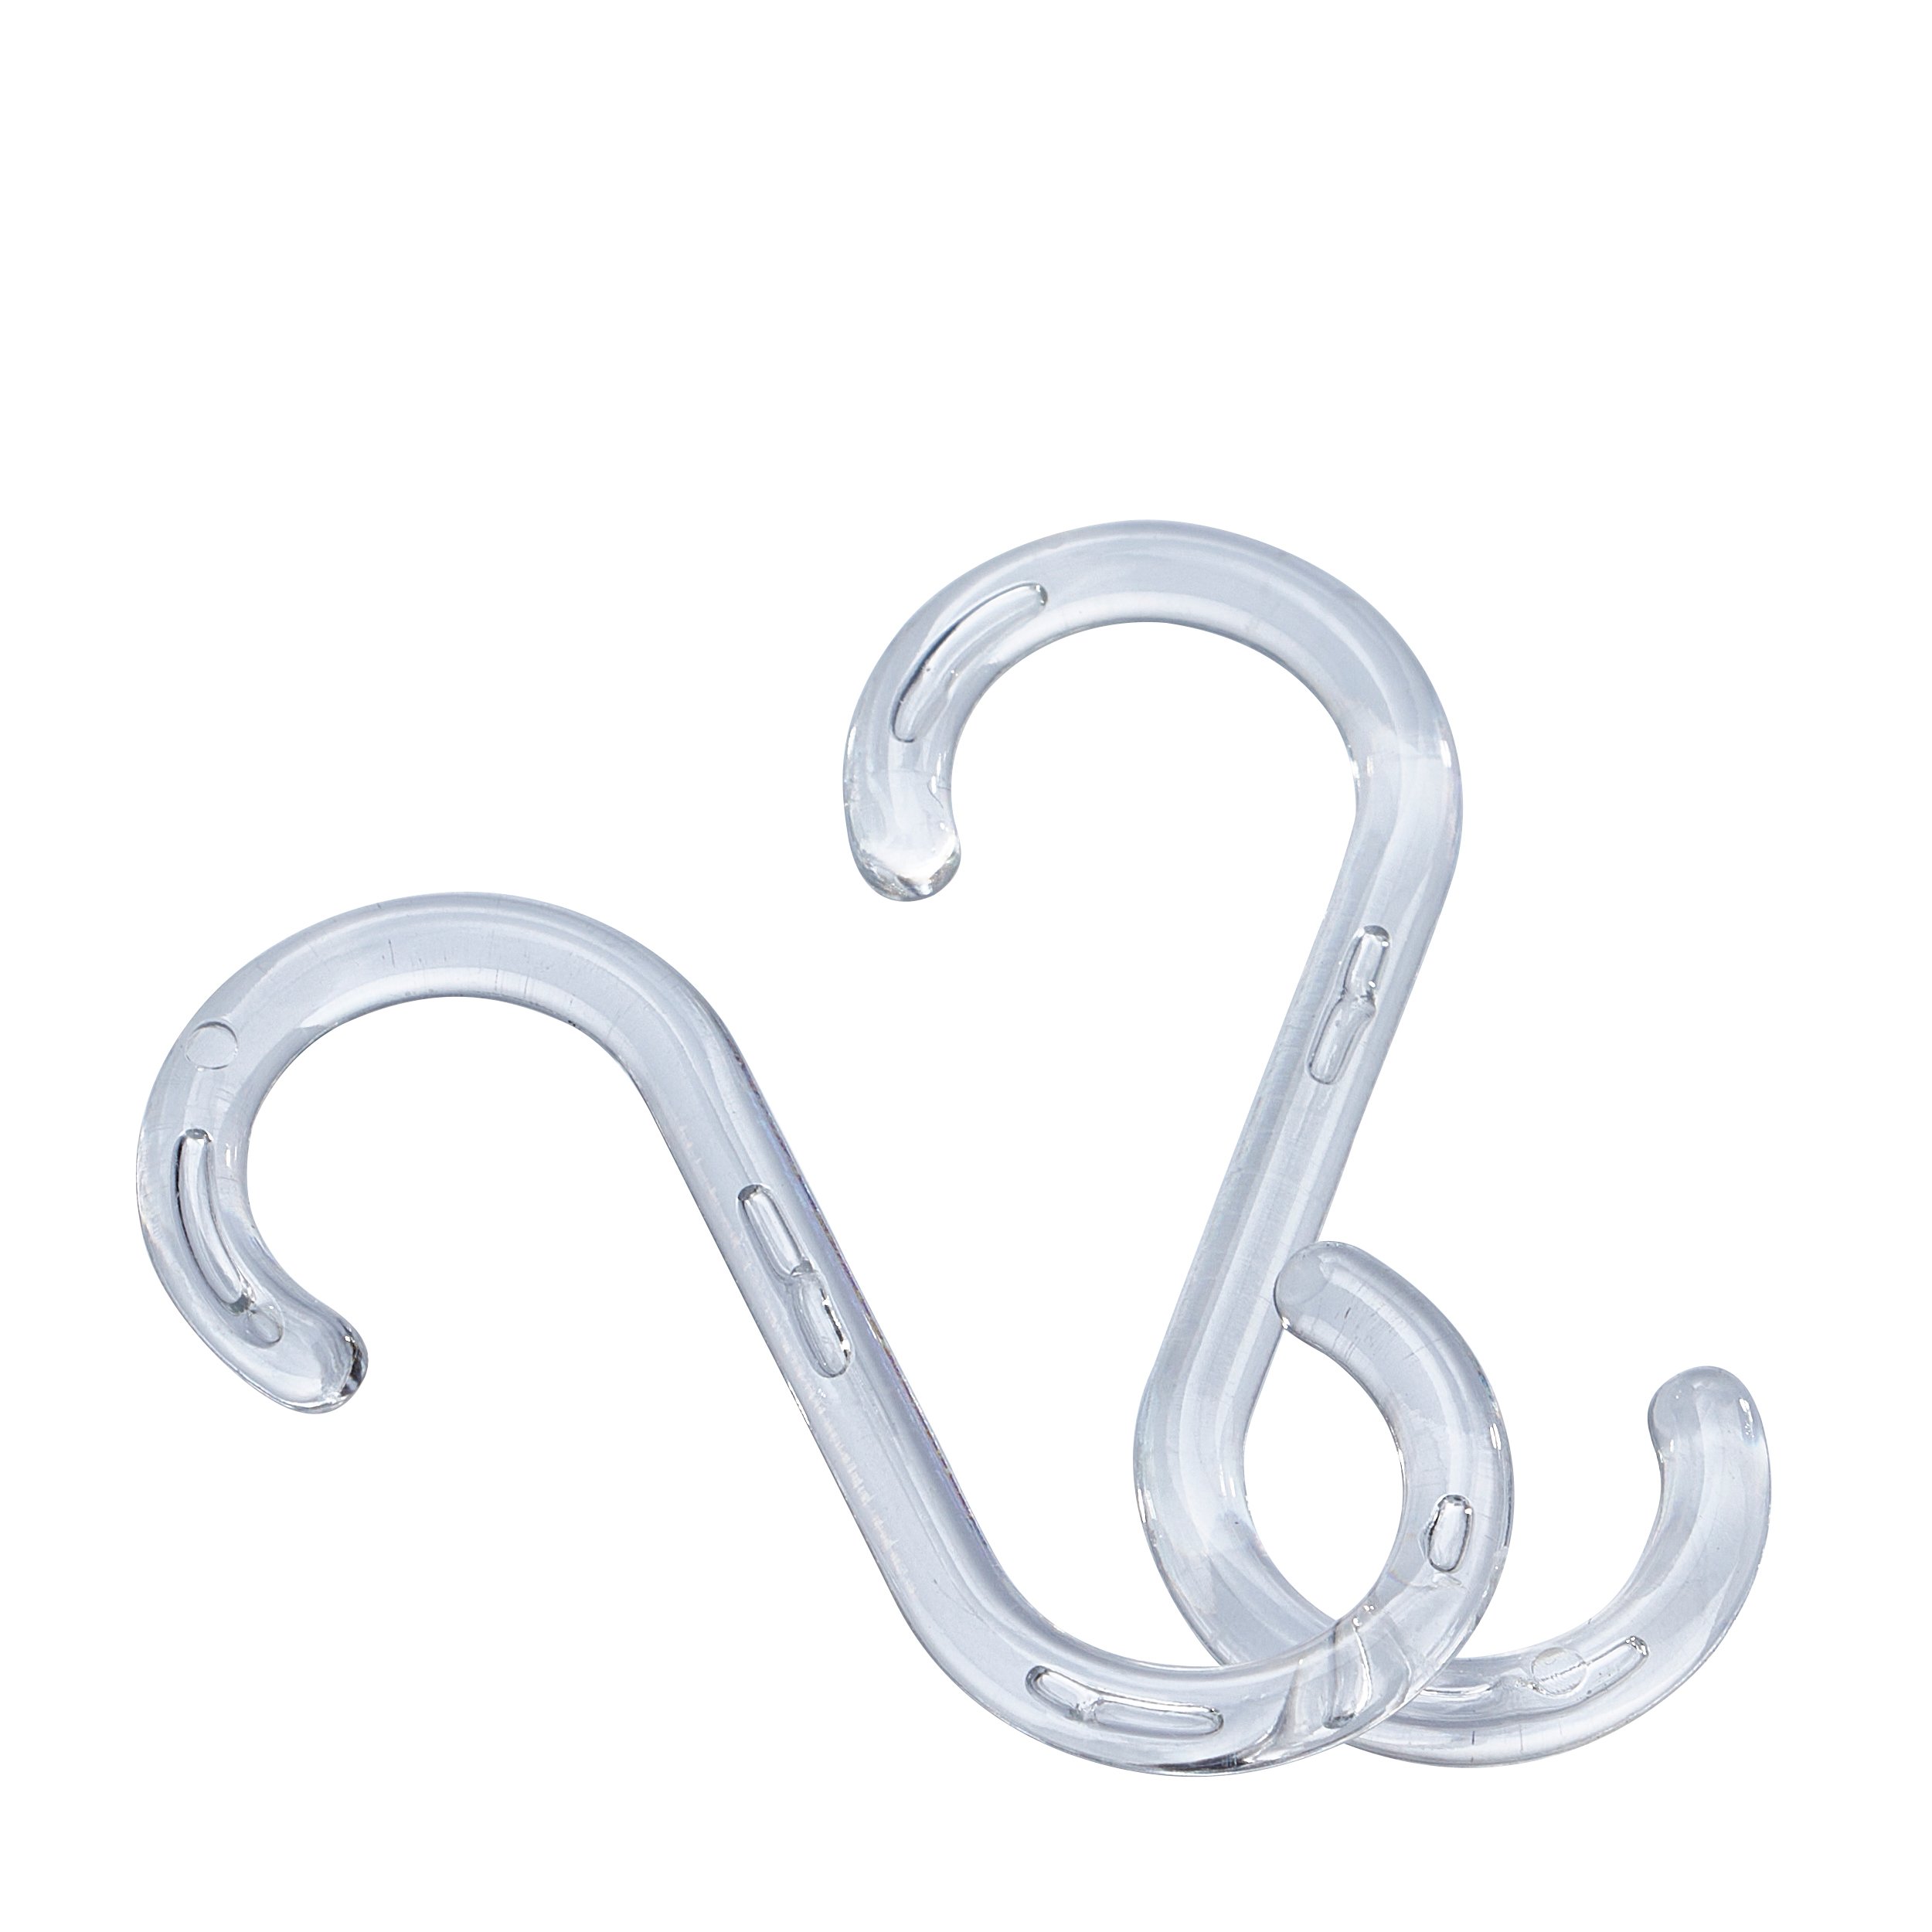 transparent S-hooks, 55 mm long, transparent plastic